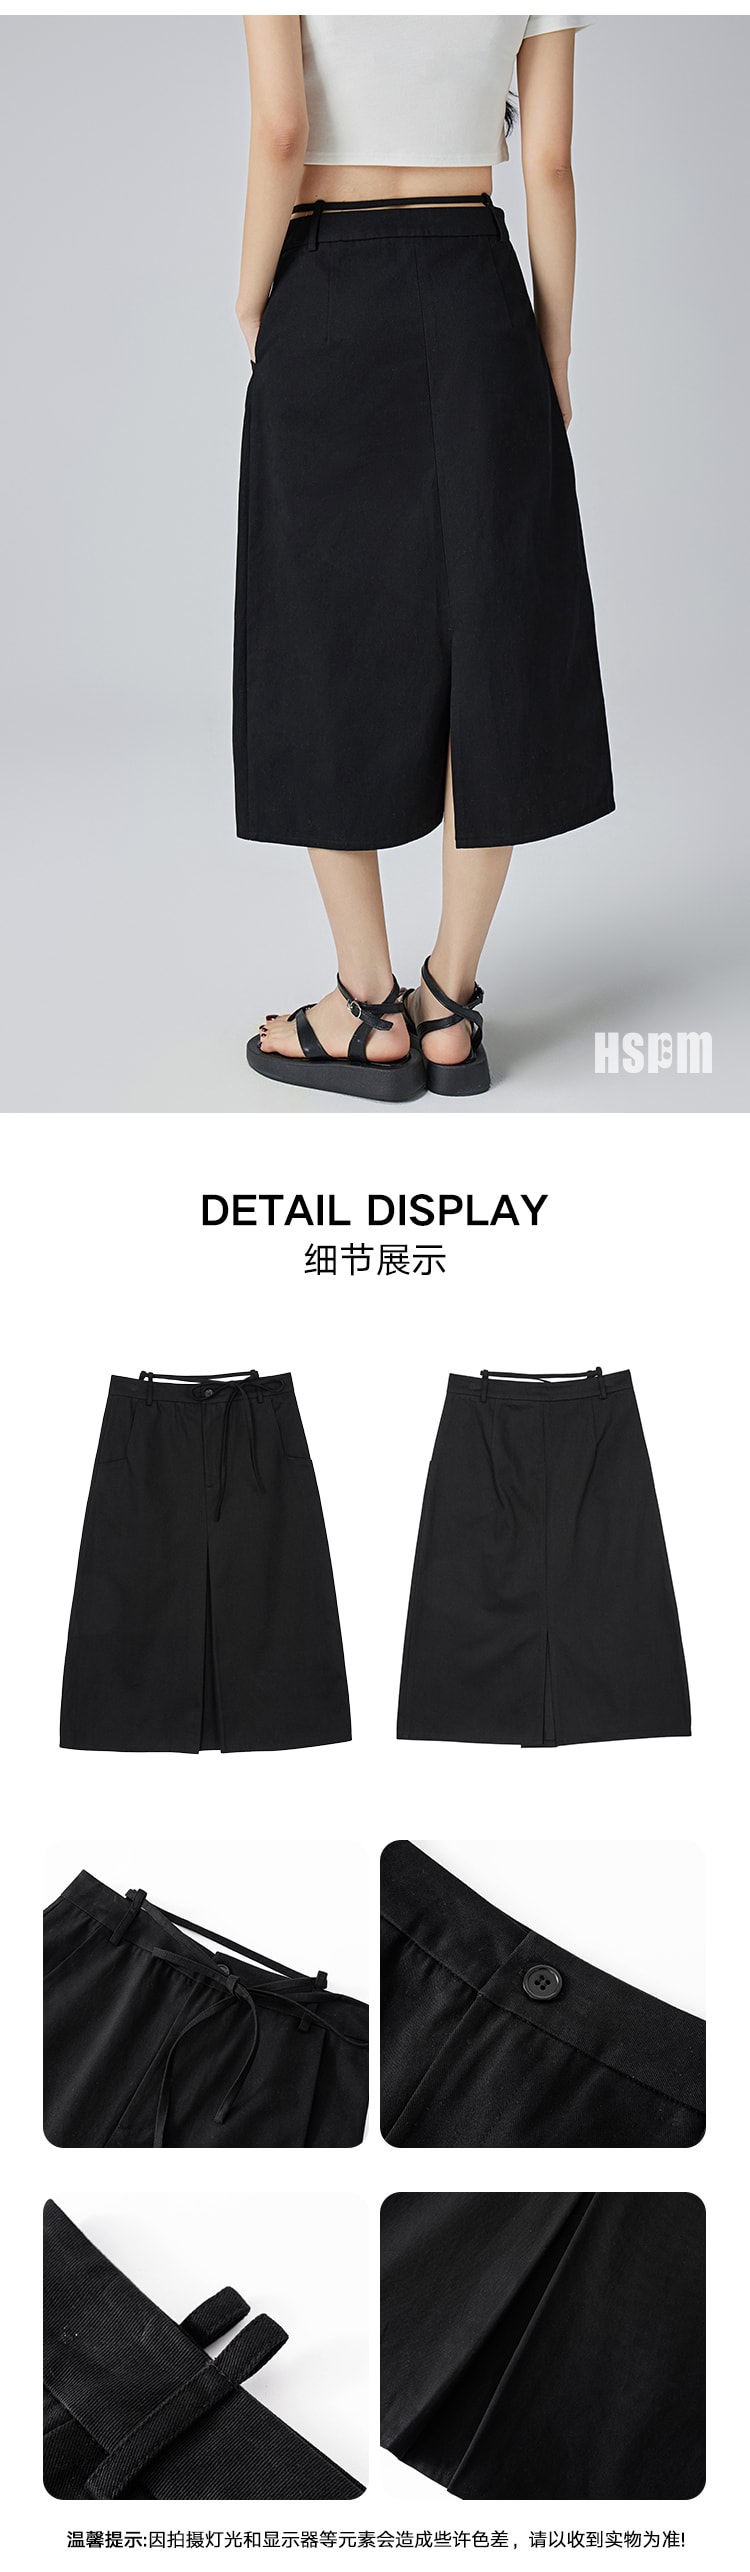 【中国直邮】HSPM 新款高腰A字系带开叉半身裙 黑色 S